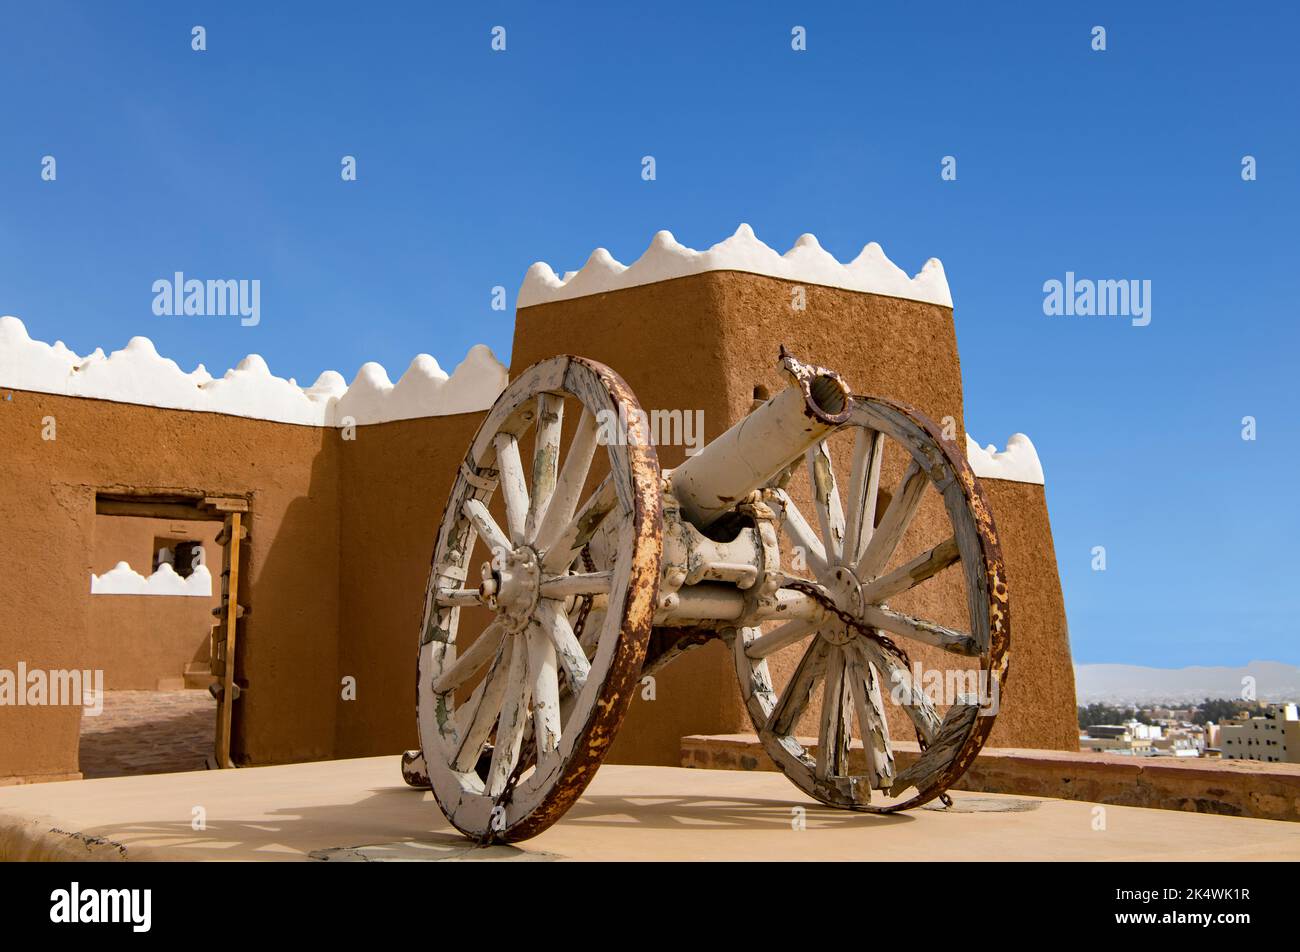 Alte portugiesische Kanone auf Dem Dach Von A'Arif Fort Hail Saudi Arabia Stockfoto